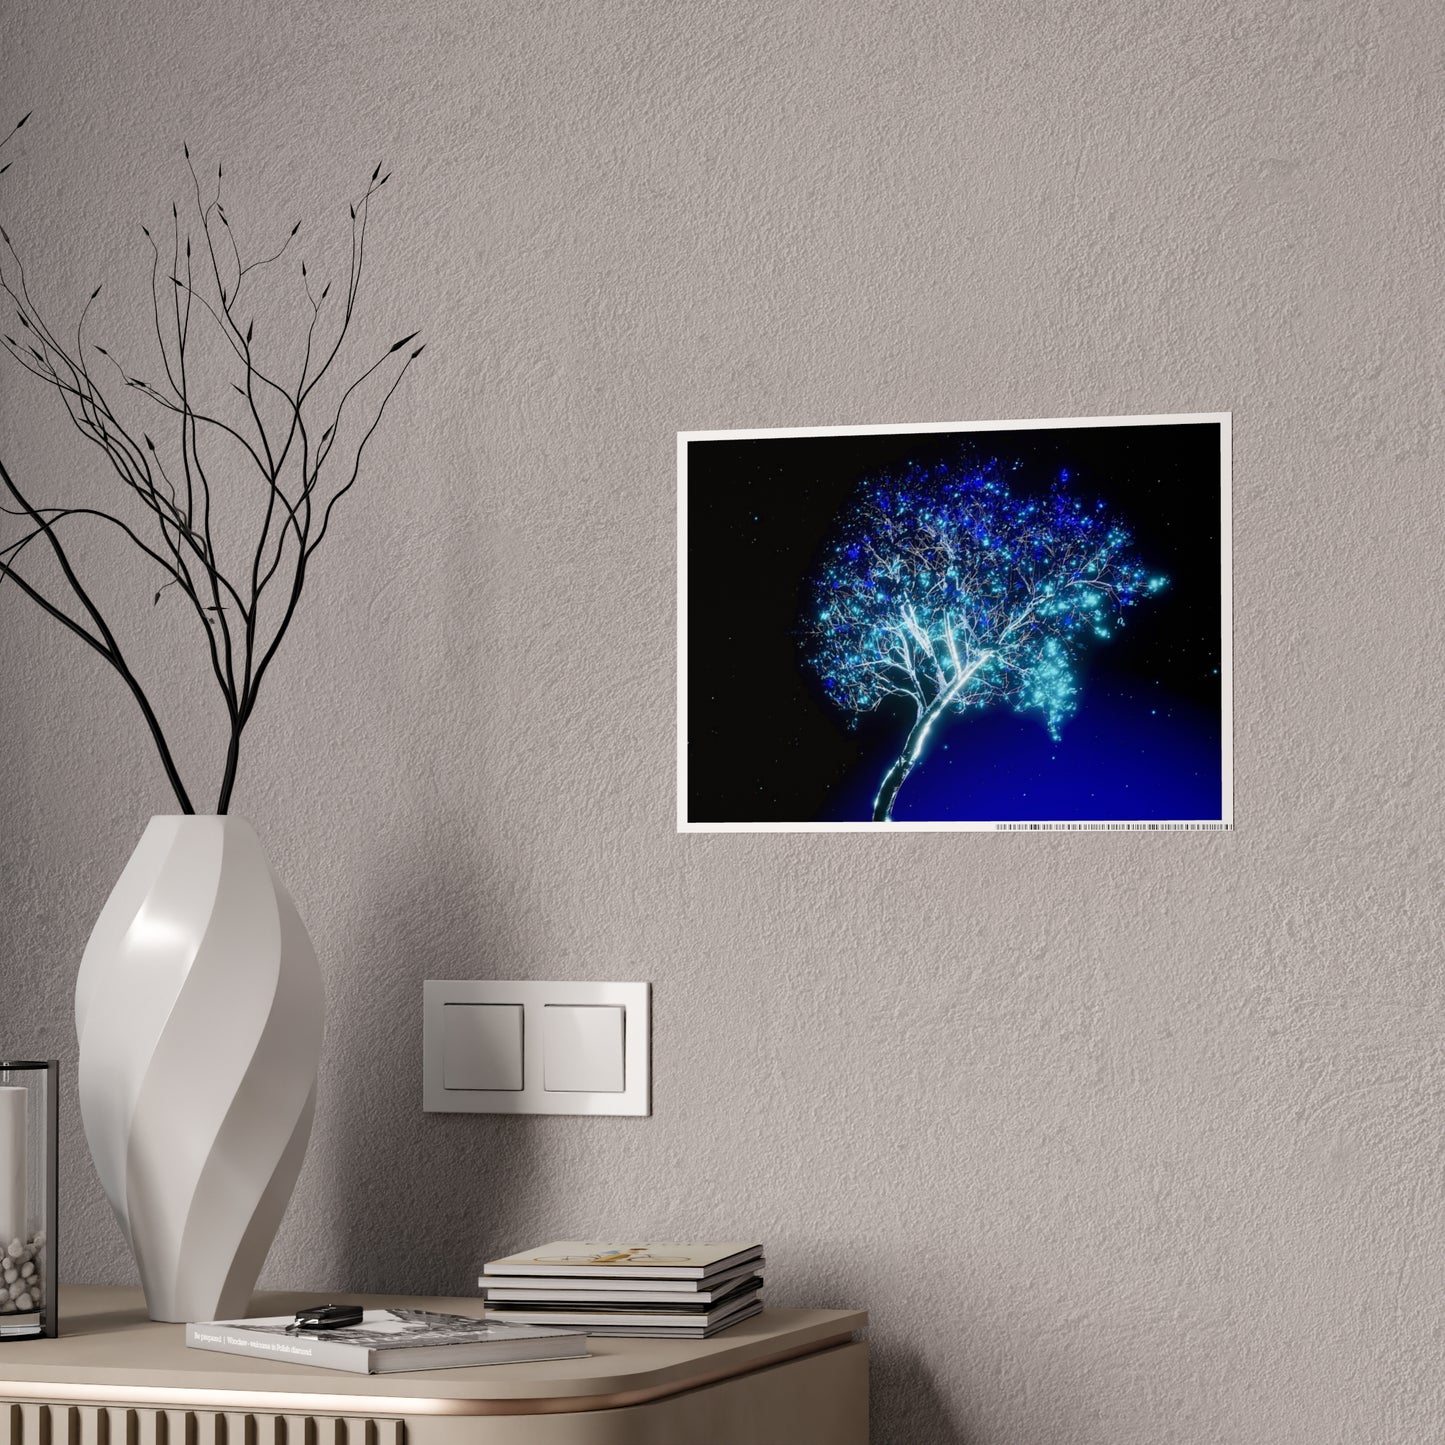 crystalline tree: ice nexus [arcane illumination] art print